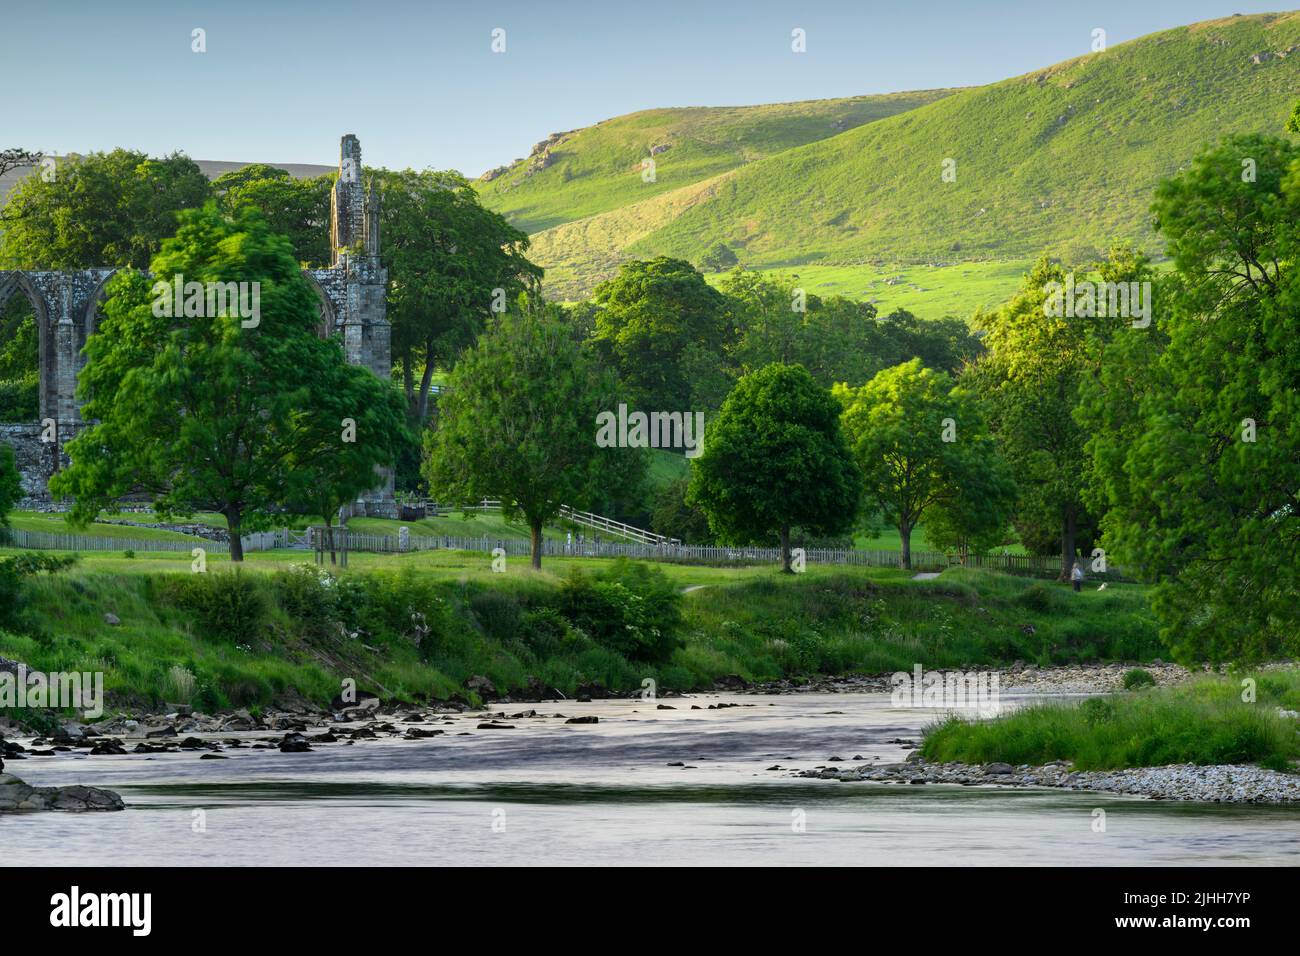 Bolton Abbey (hermosa ruina histórica a orillas del río, río sinuoso, colinas ondulantes iluminadas por el sol, tarde de verano) - Wharfedale Yorkshire Dales, Inglaterra, Reino Unido Foto de stock